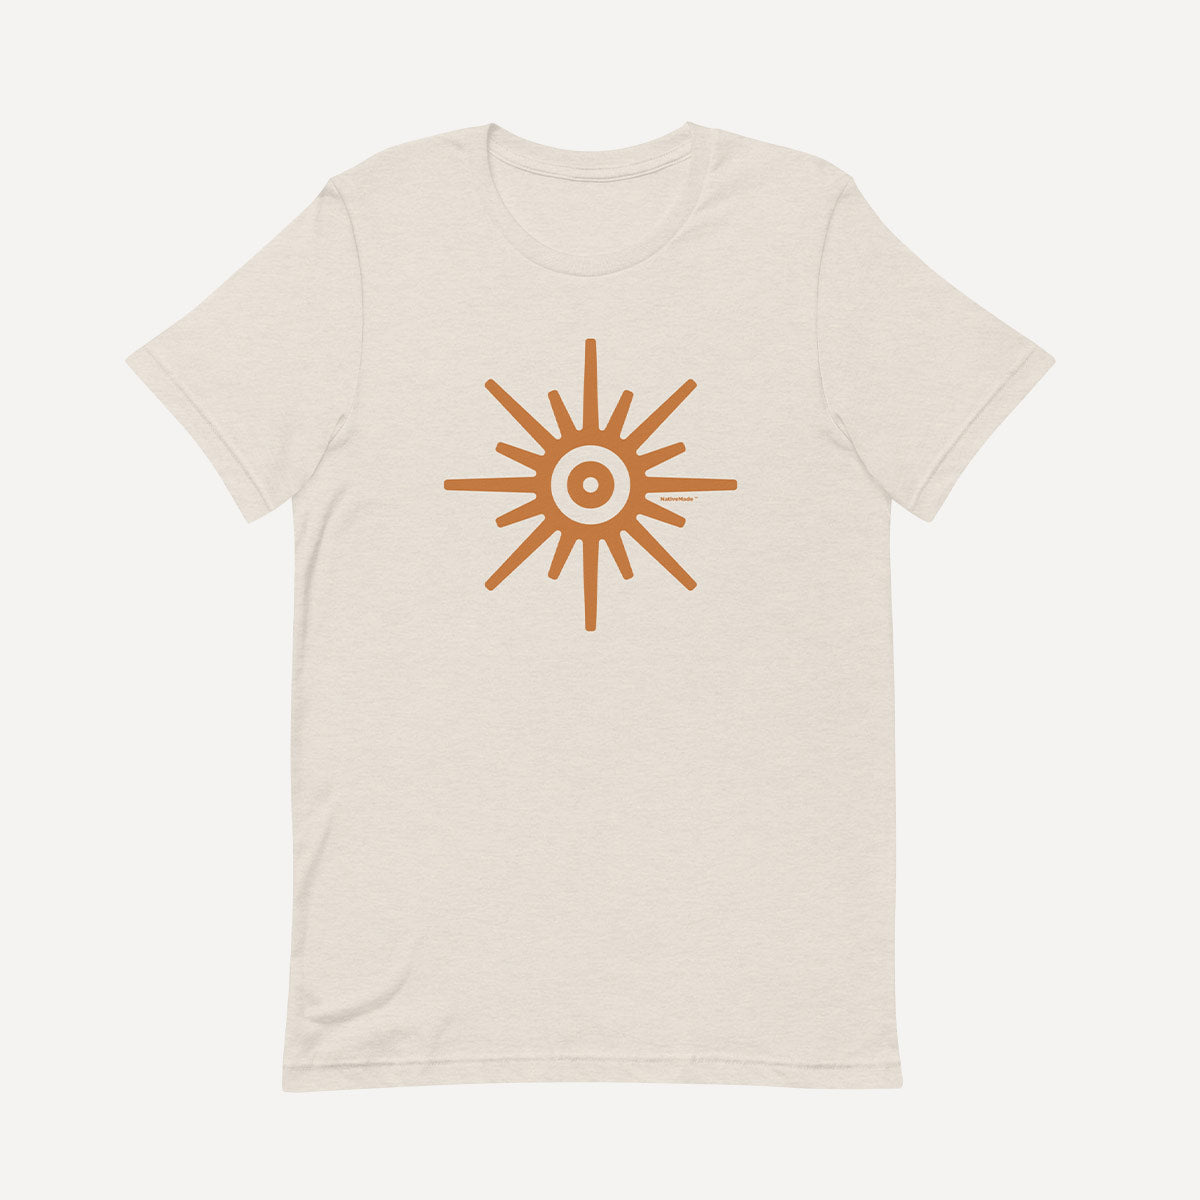 Camiseta de sol